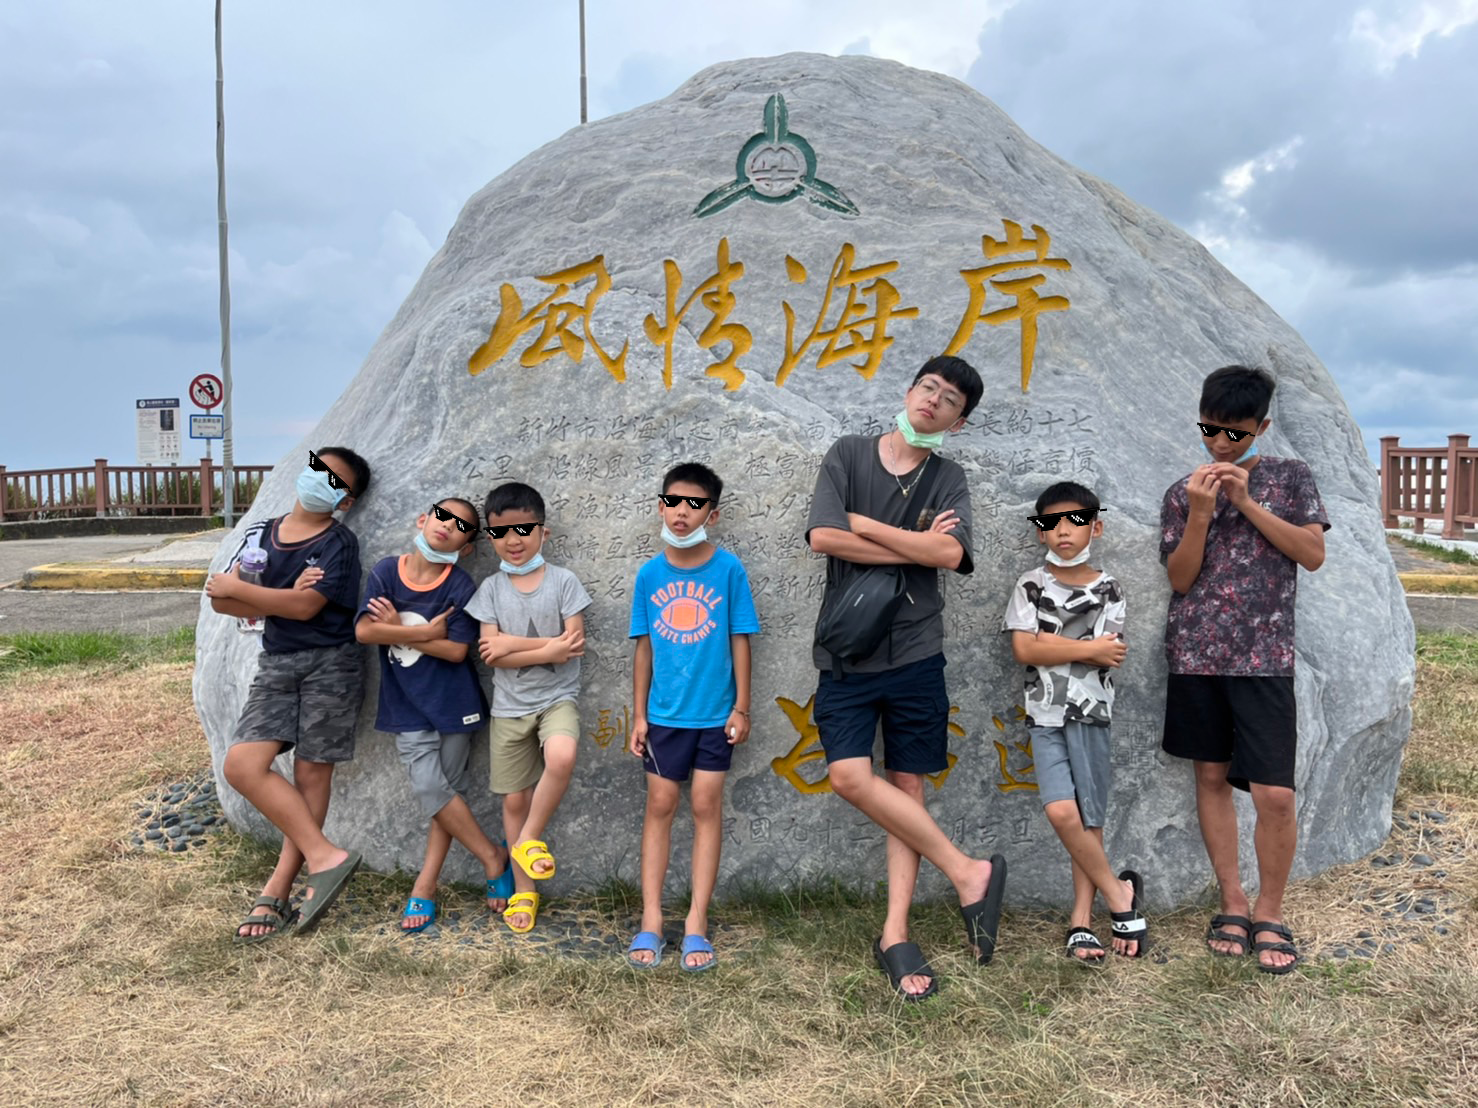 來到風情萬種的新竹風情海岸，冷泉少年團跟老師一起擺出酷酷的姿勢，準備在海邊大玩特玩。